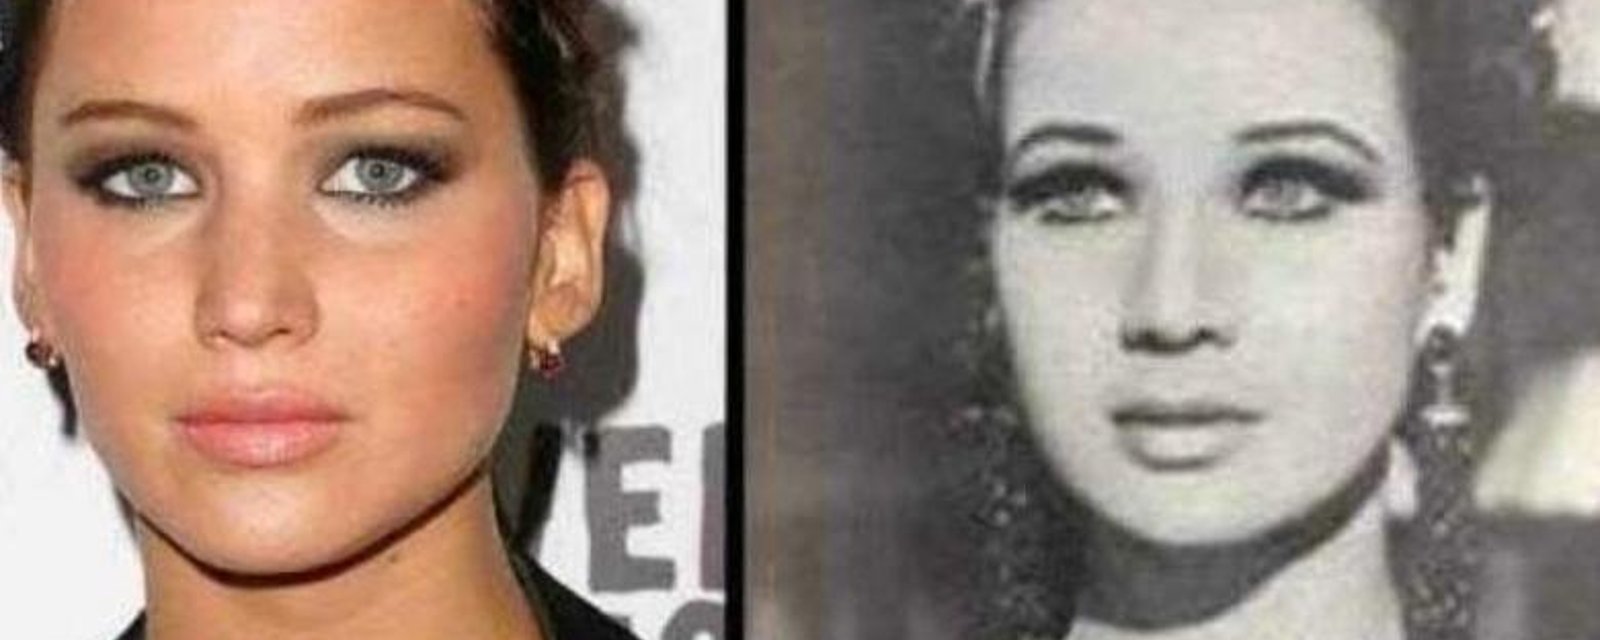 22 photos de célébrités et de leurs jumeaux du passé, c'est hallucinant!